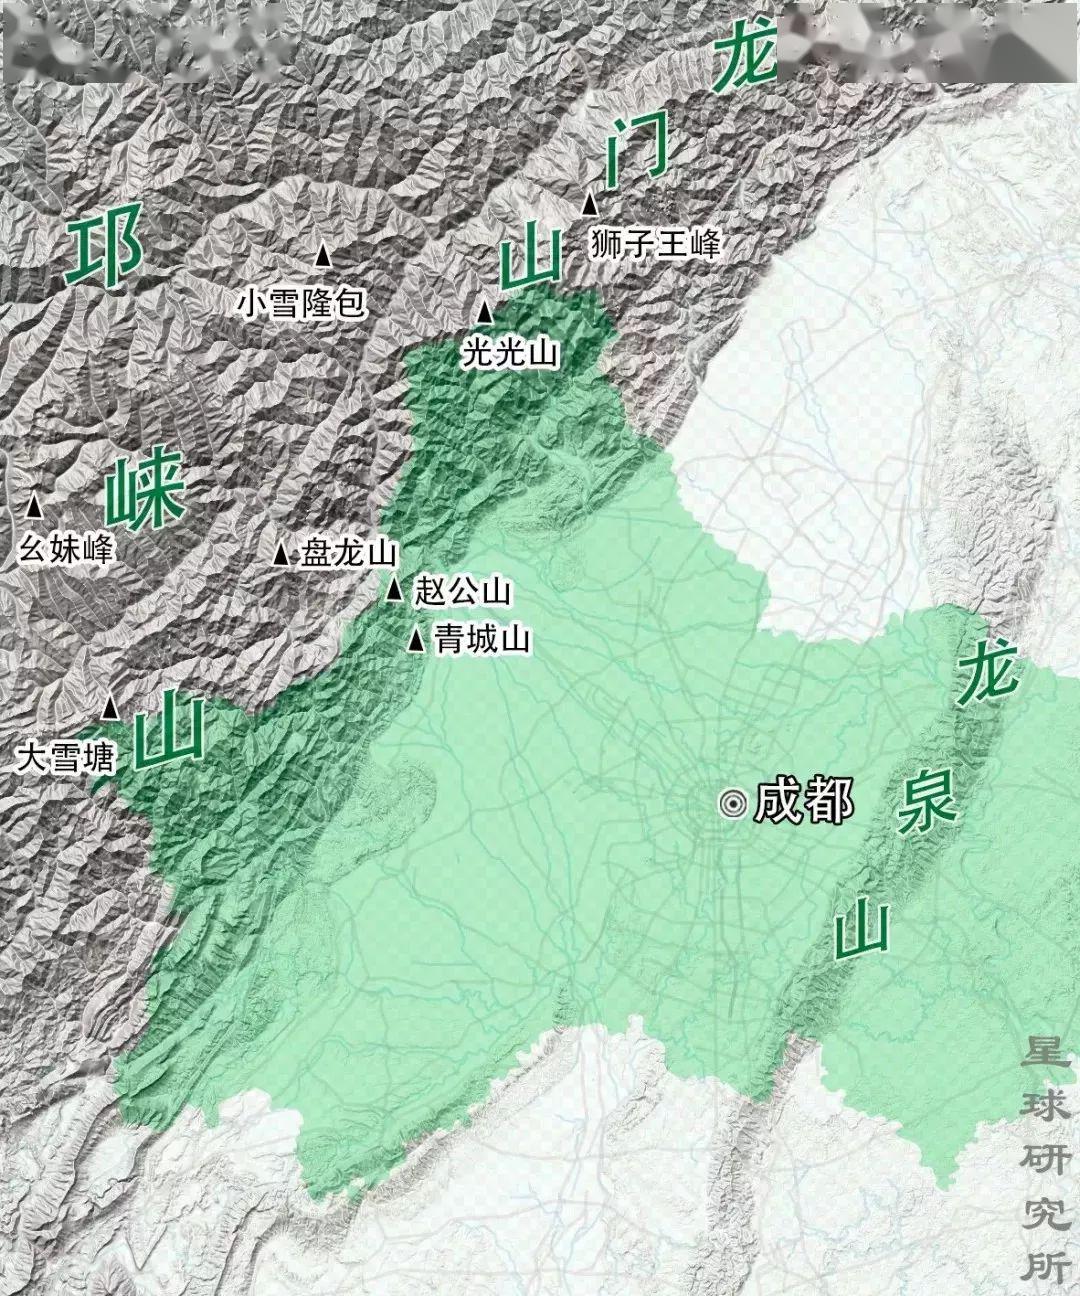 成都是四川省的省会,地处中国西南地区,位于四川盆地的西部,成都平原